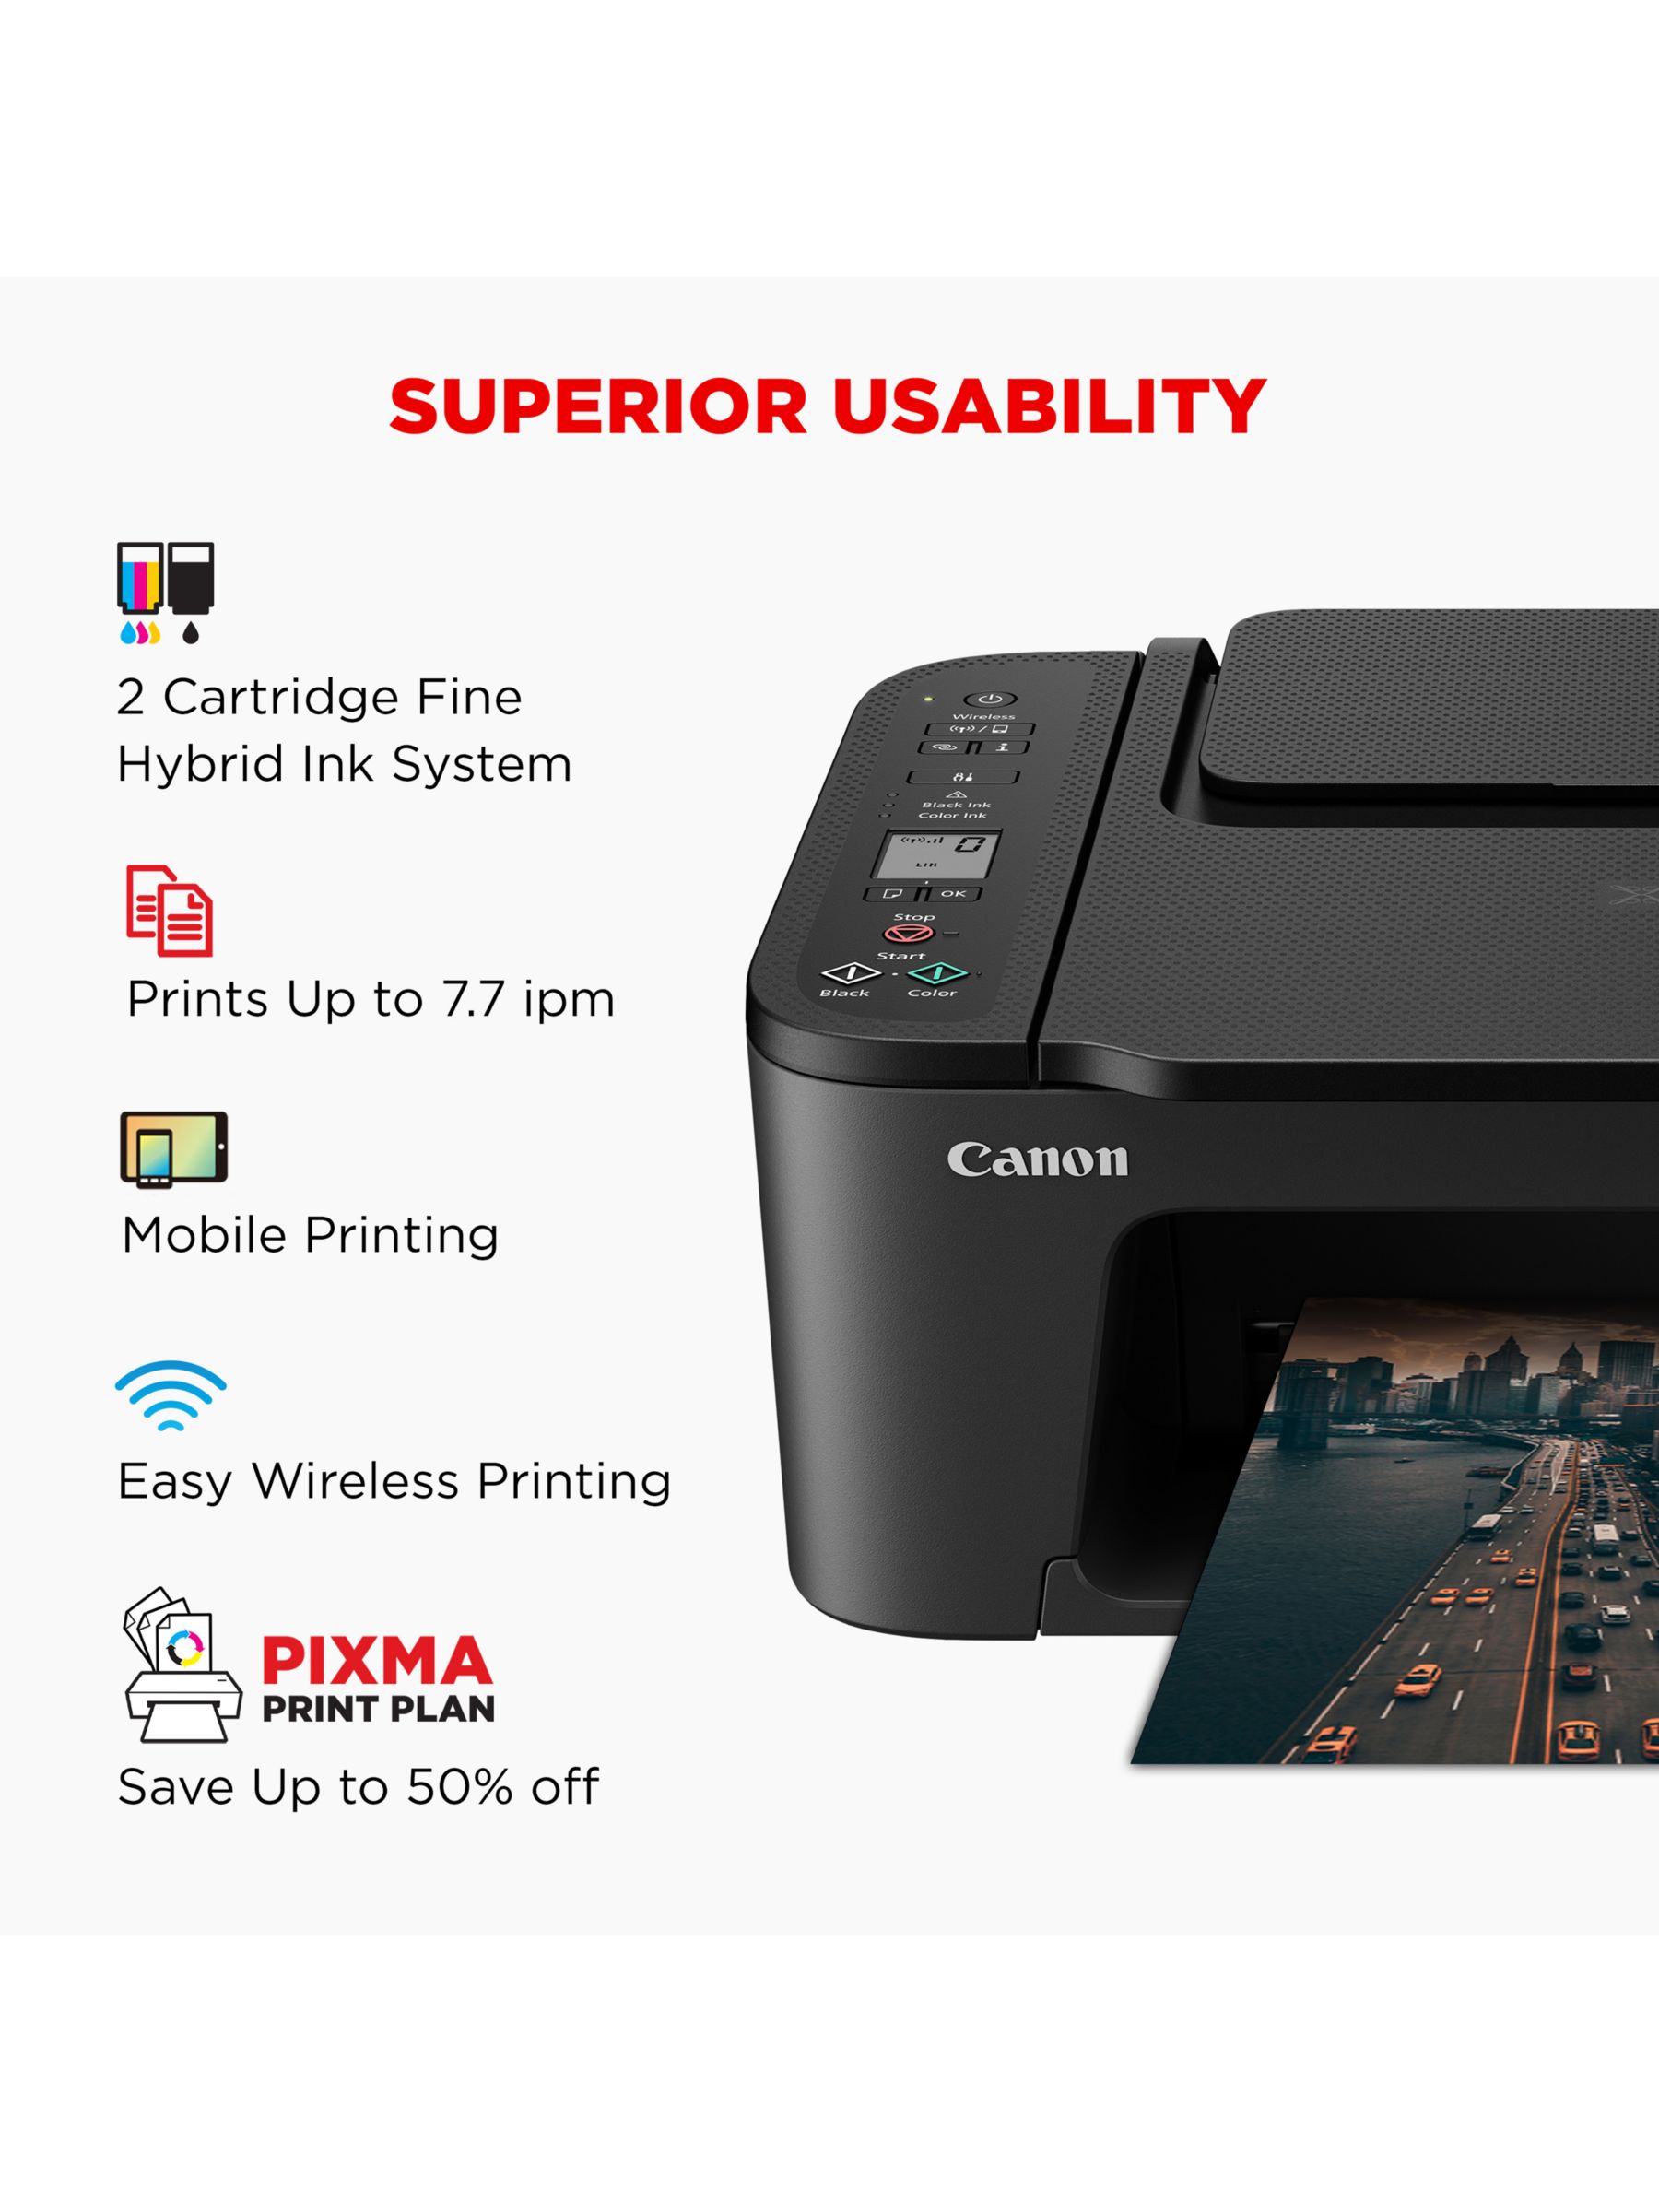 Canon PIXMA TS3550i All-in-One Wireless Wi-Fi Printer, Black